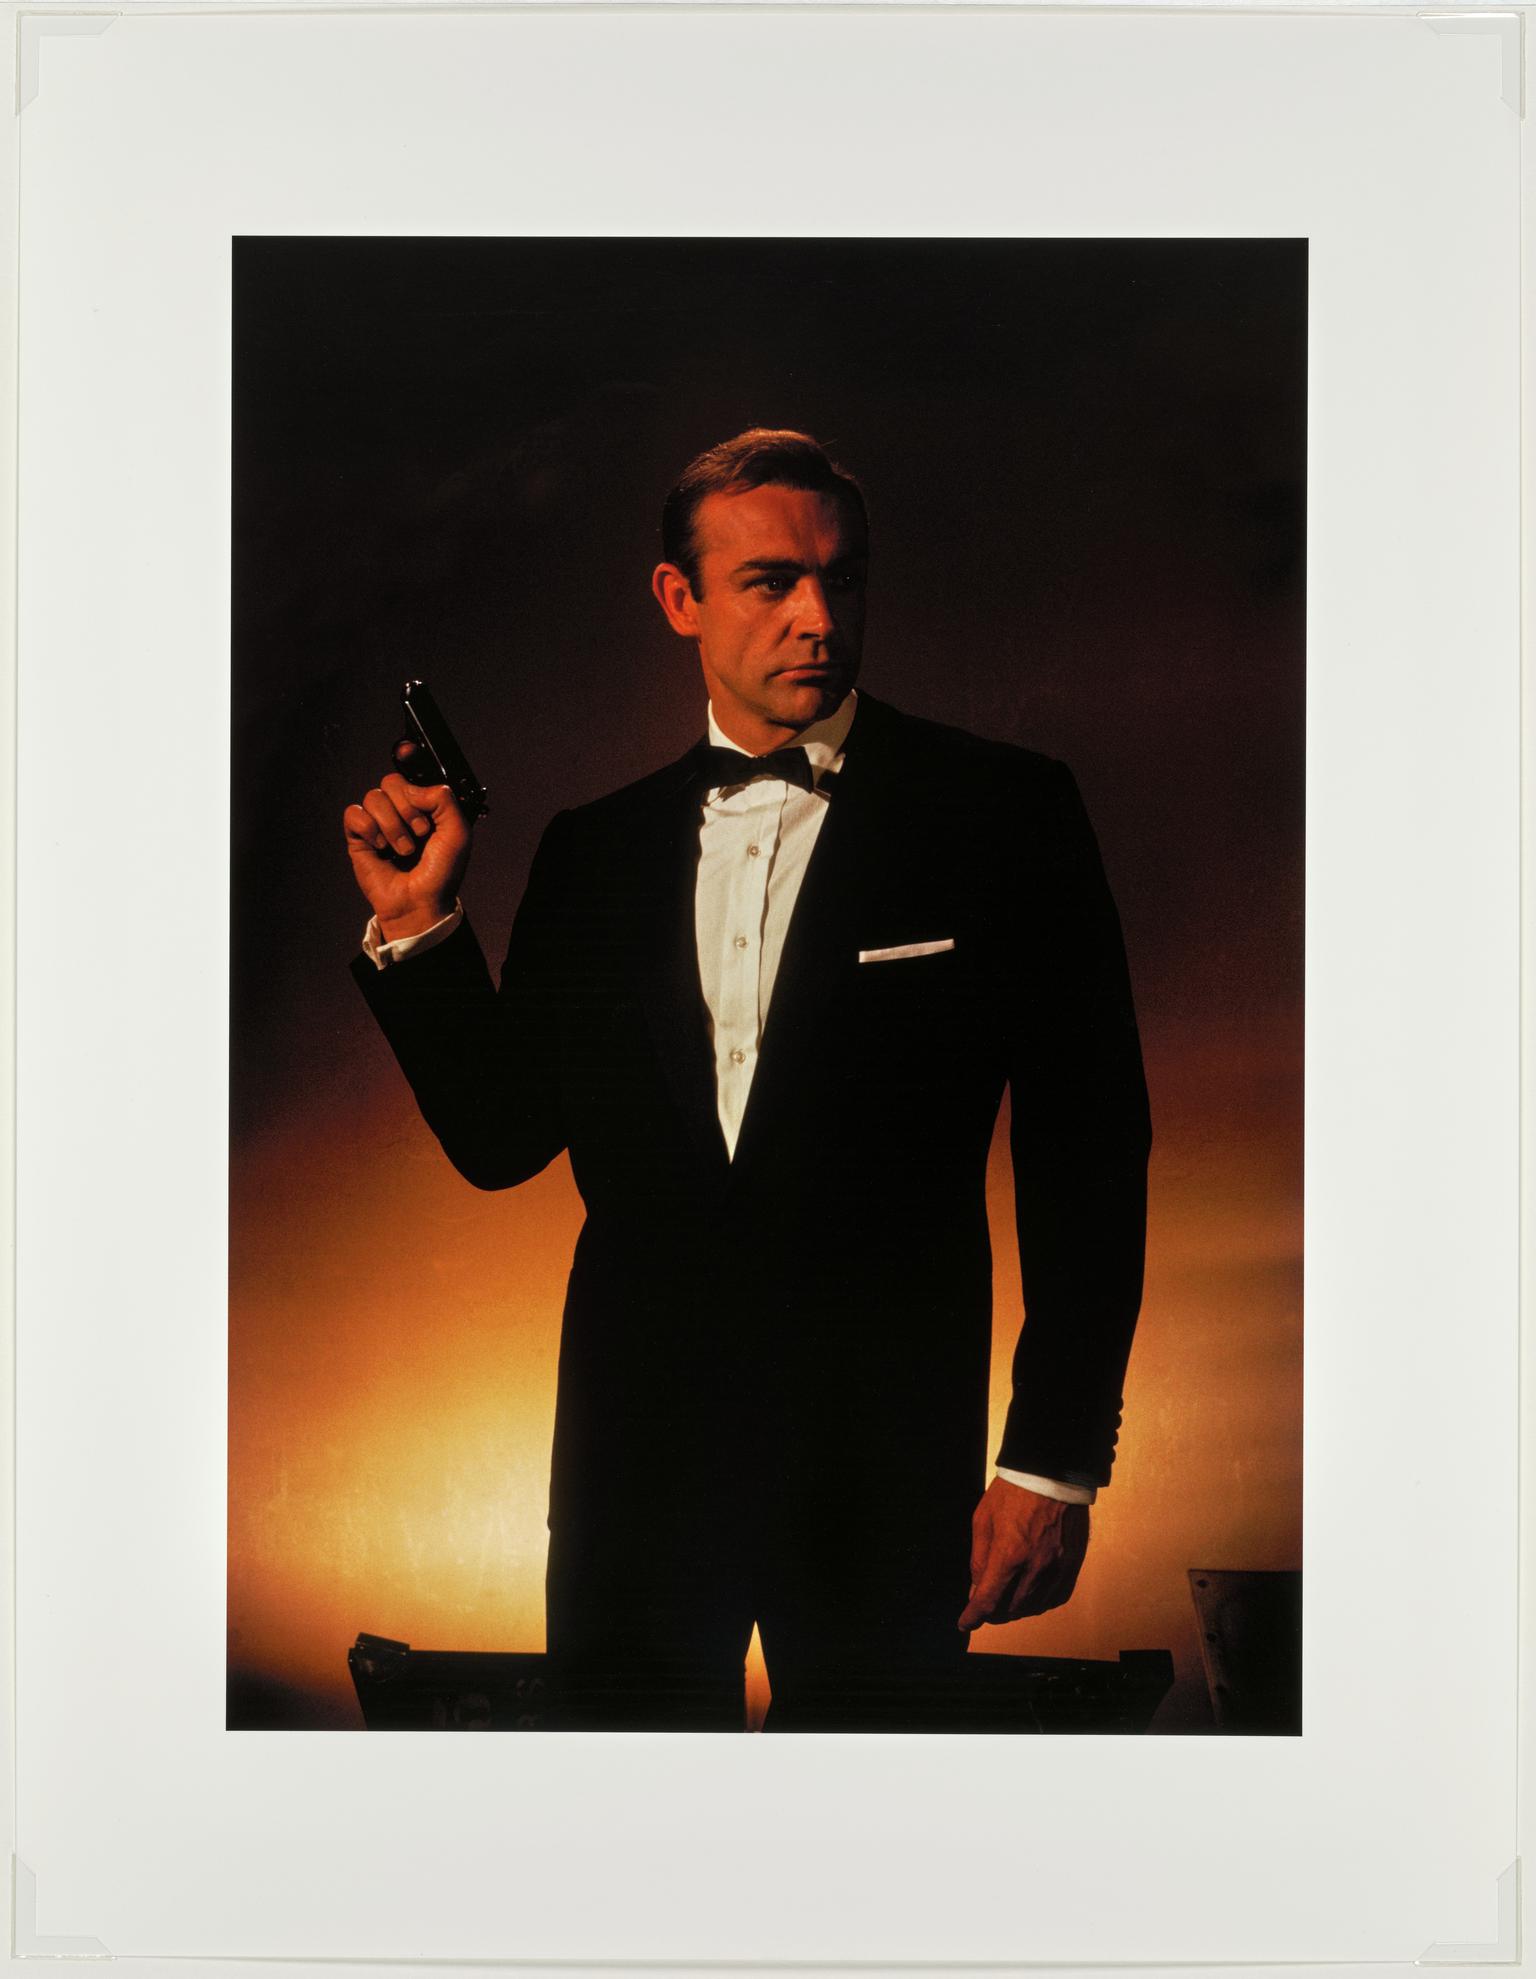 James Bond actor Sean CONNERY. London. England